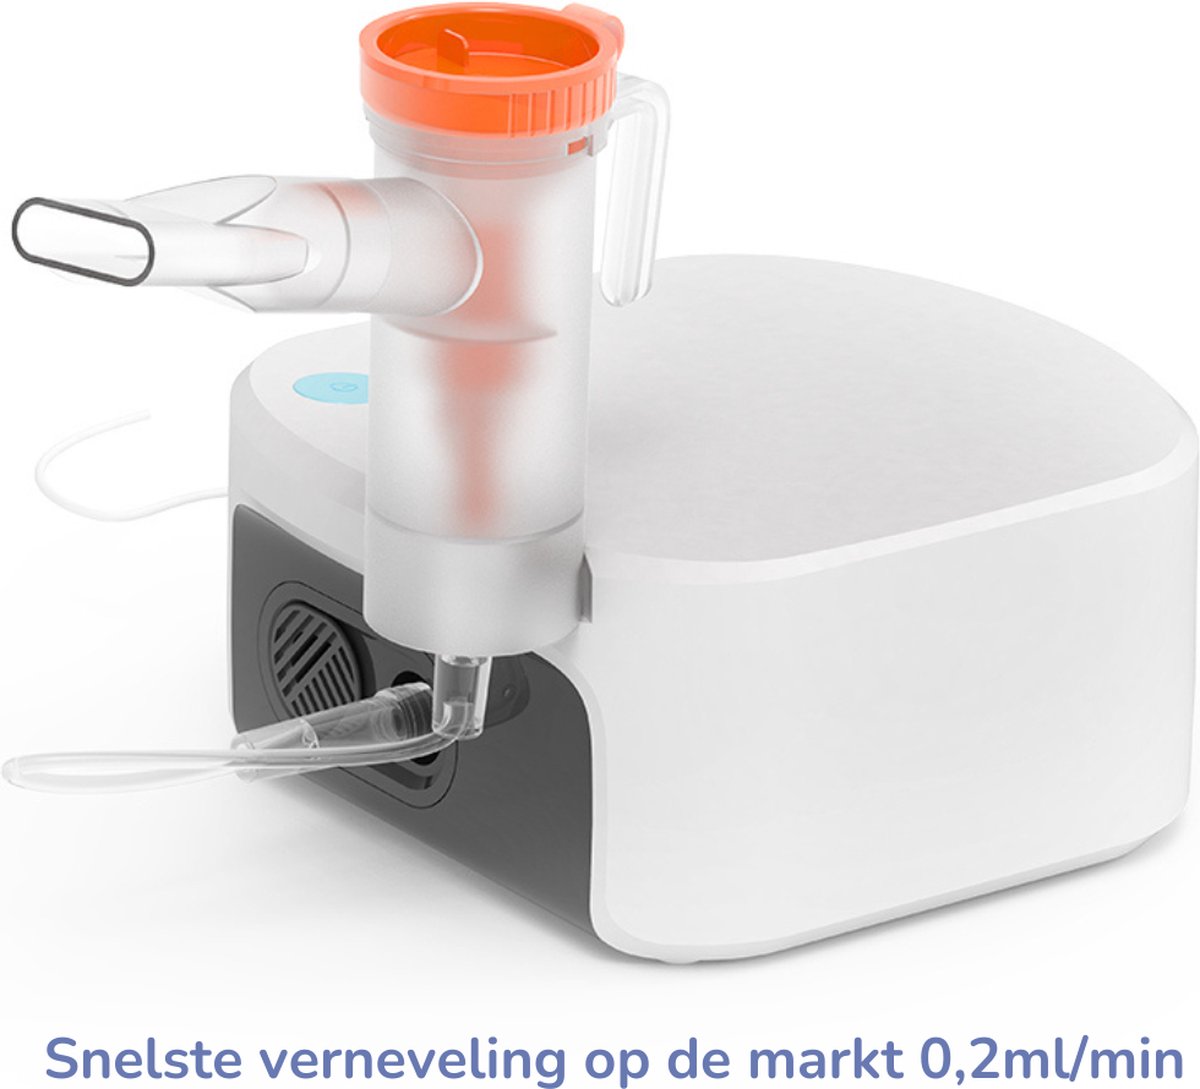 Inhalator - Vernevelaar - Aerosoltoestel - Voor kinderen en volwassenen - Medisch product - Korte inhalatietijd - Hoge vernevelingprestatie 0.2ml/min - Incl. maskers